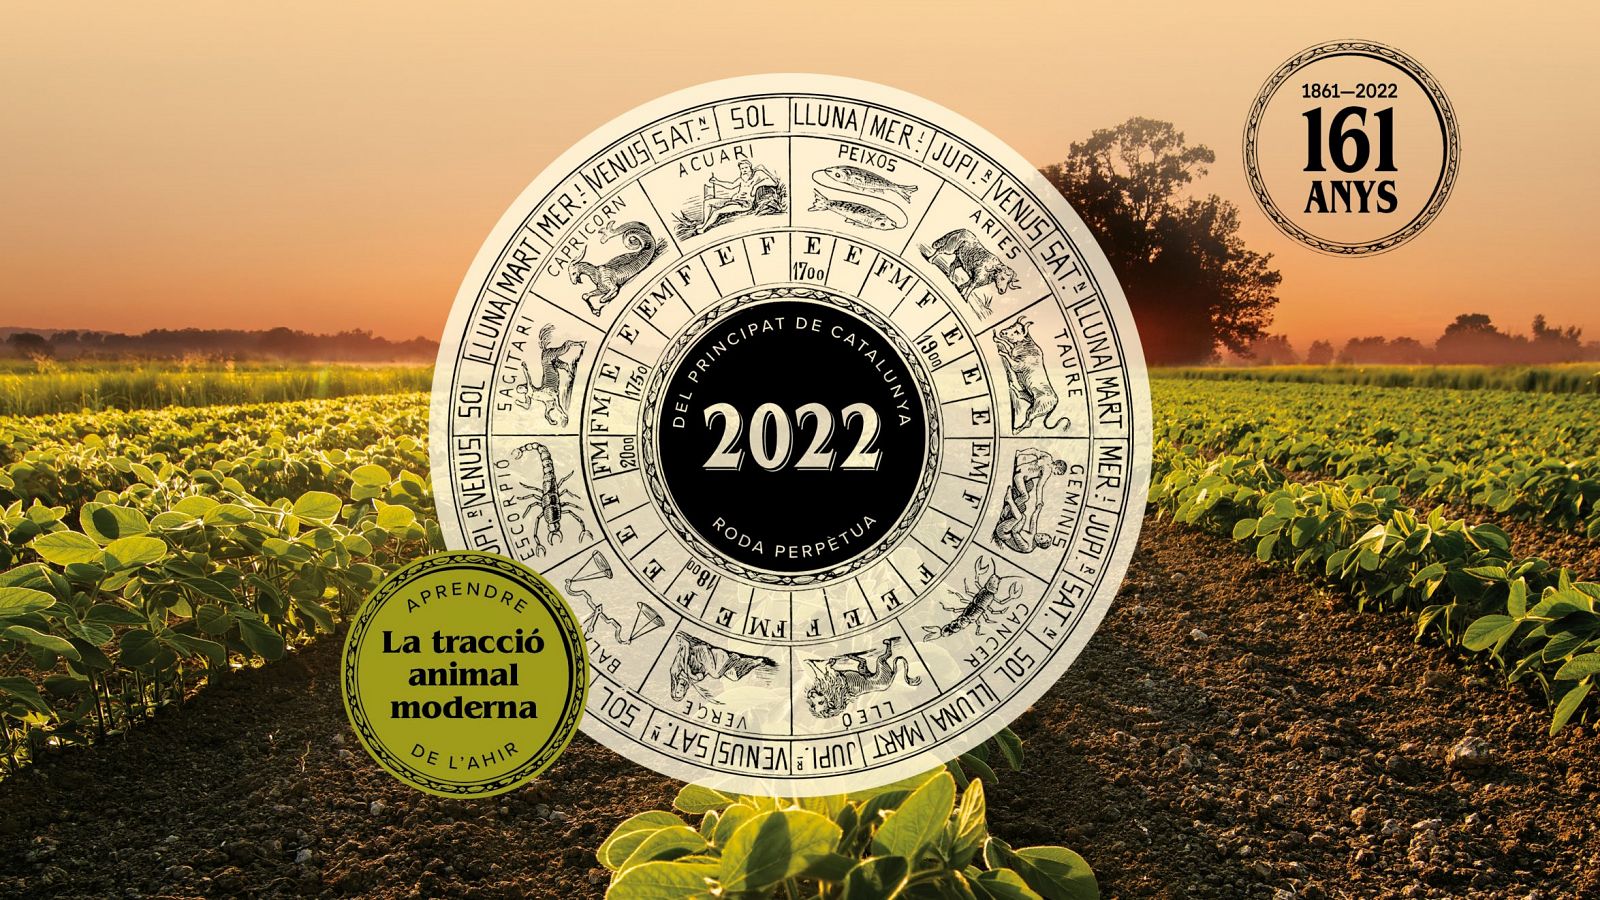 El "Calendari dels Pagesos" pronostica que l'any 2022 serà molt fèrtil